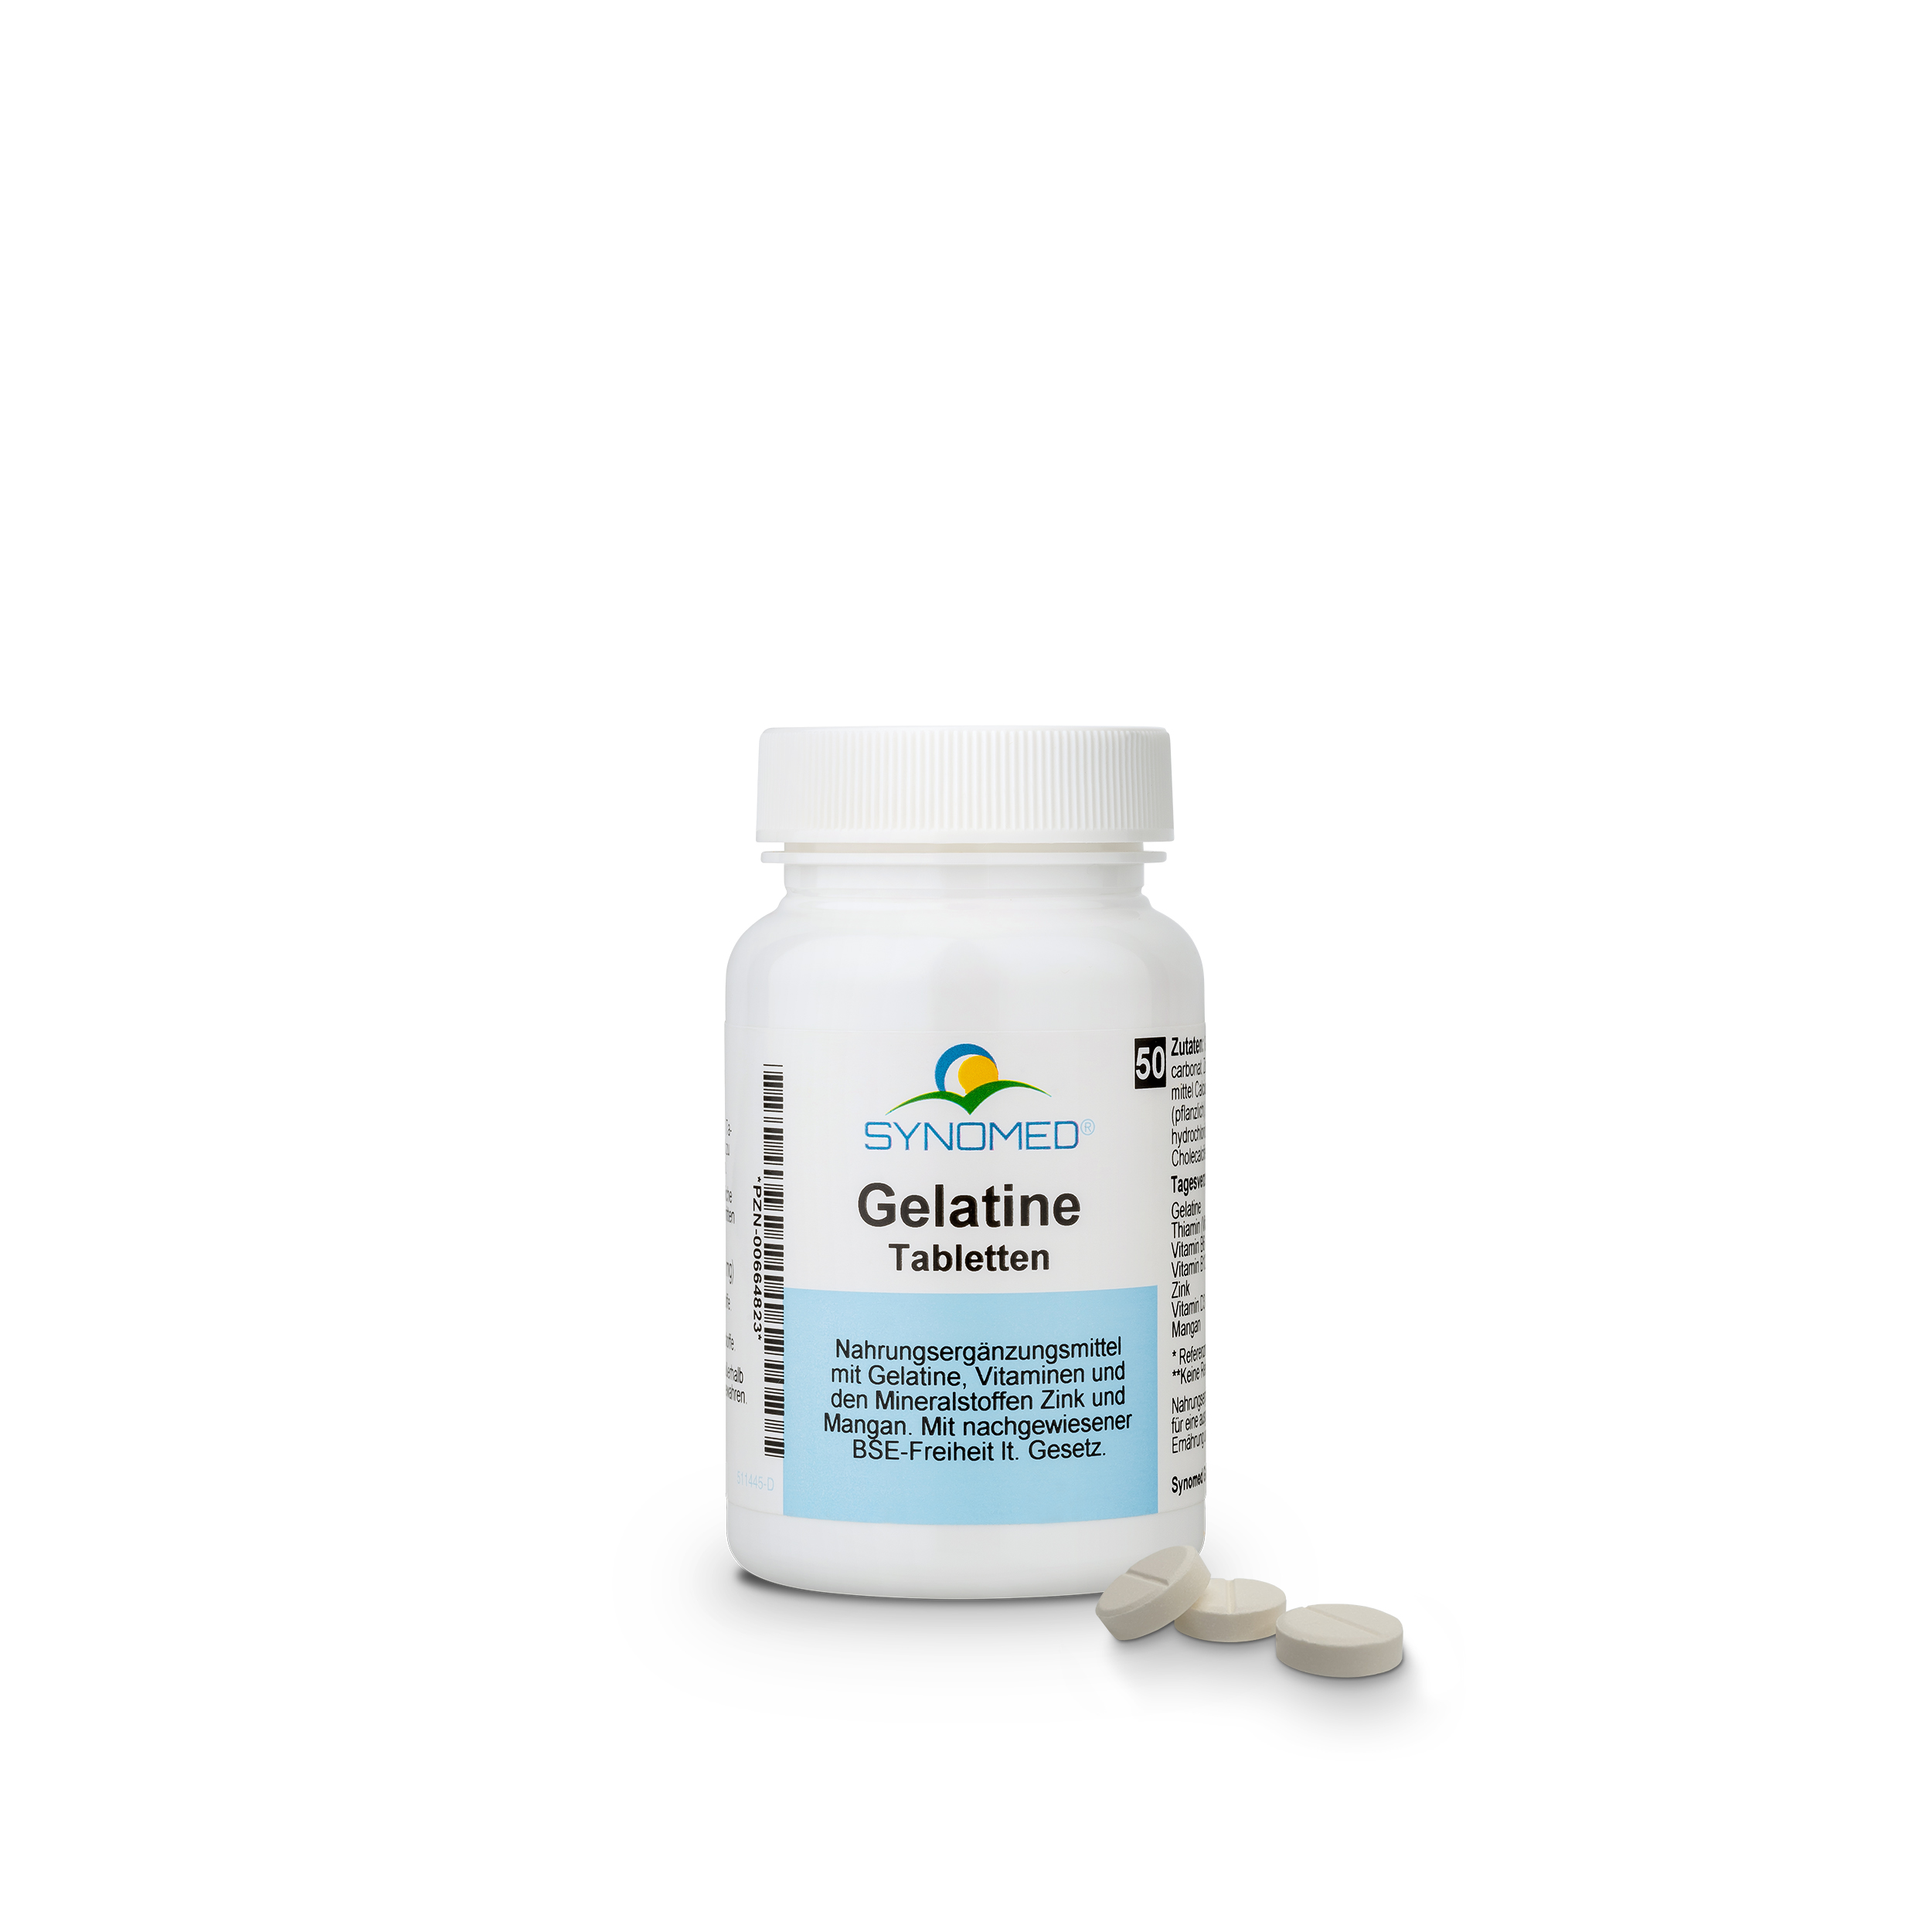 Gelatine Tabletten